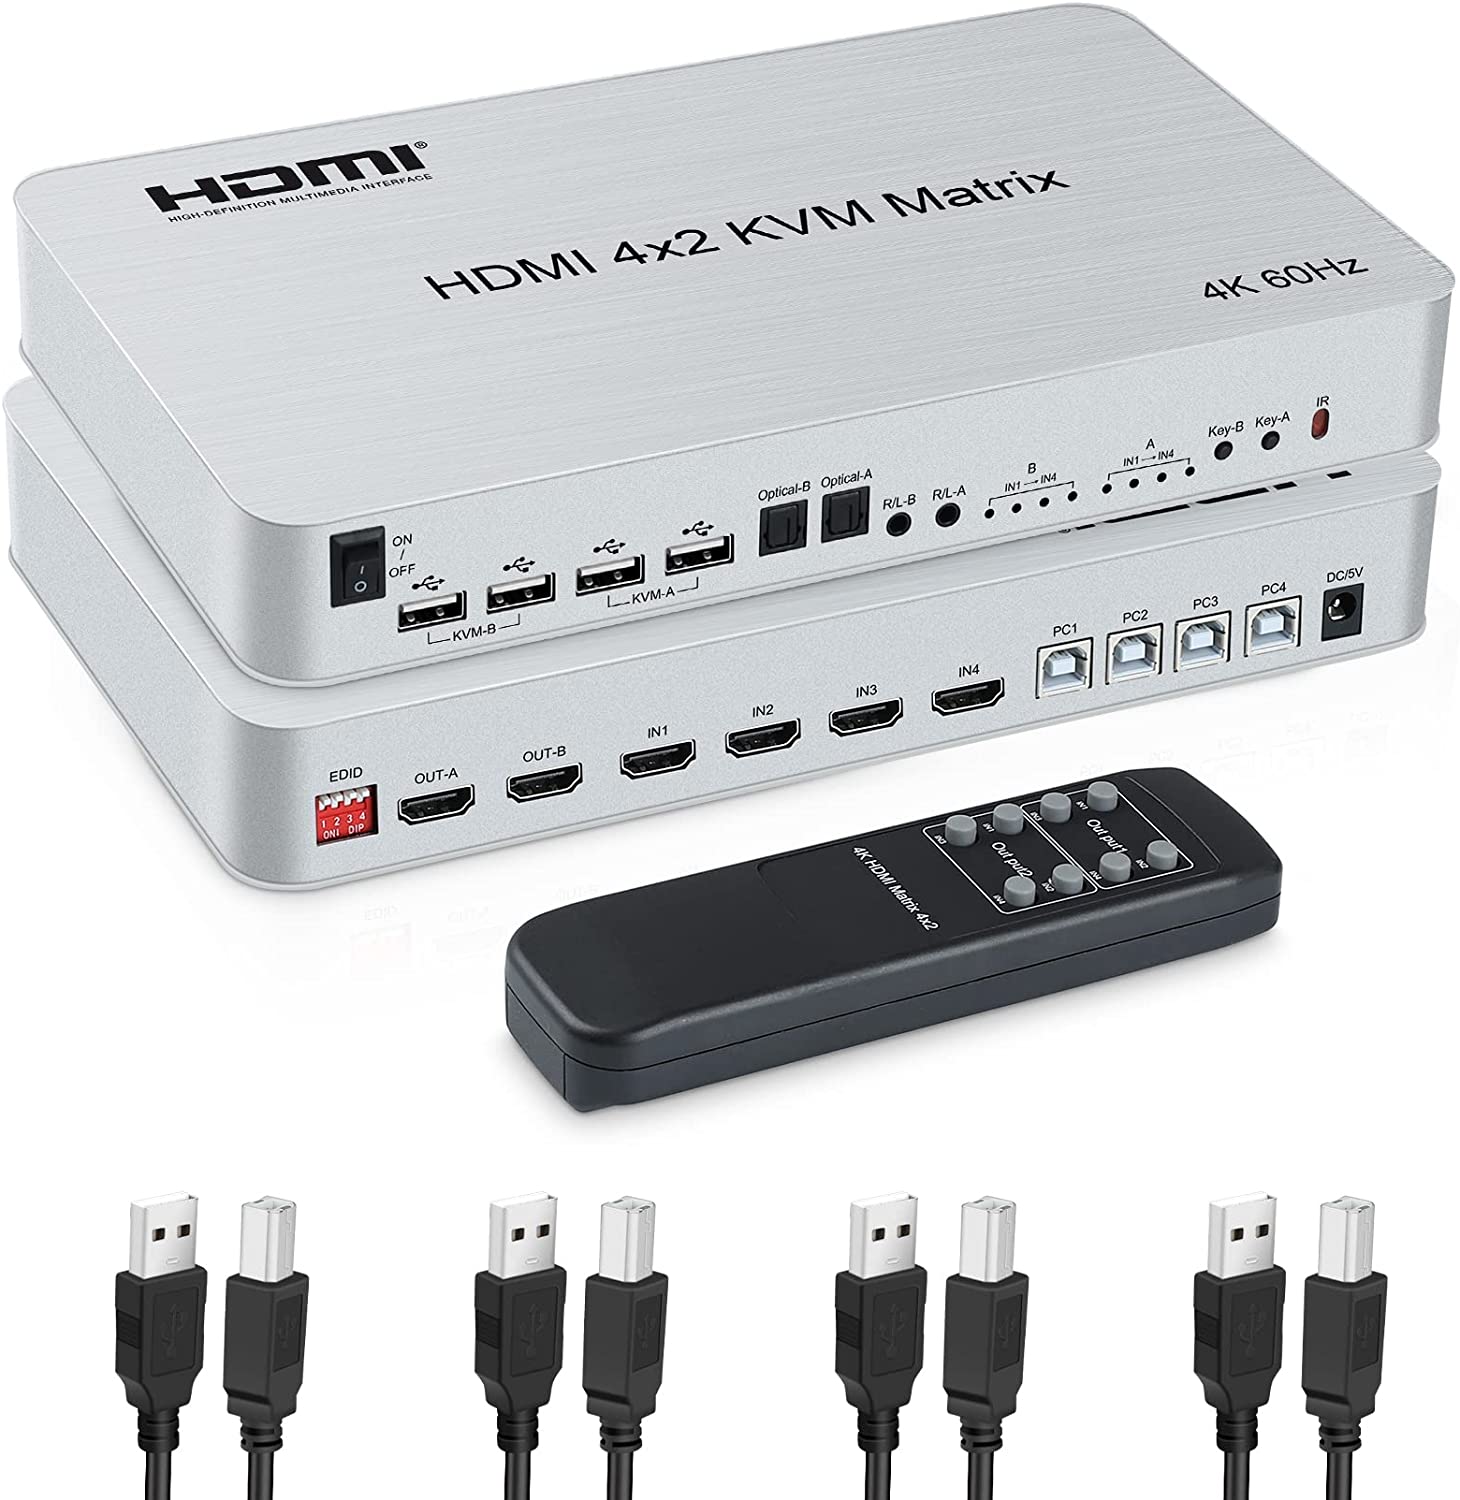 4K@60Hz 4x2 HDMI KVM Matrix HDMI kvm Switch SplitterOptical & L/R Audio Output  4 USB Port Share 4 Computer to 2 Monitor